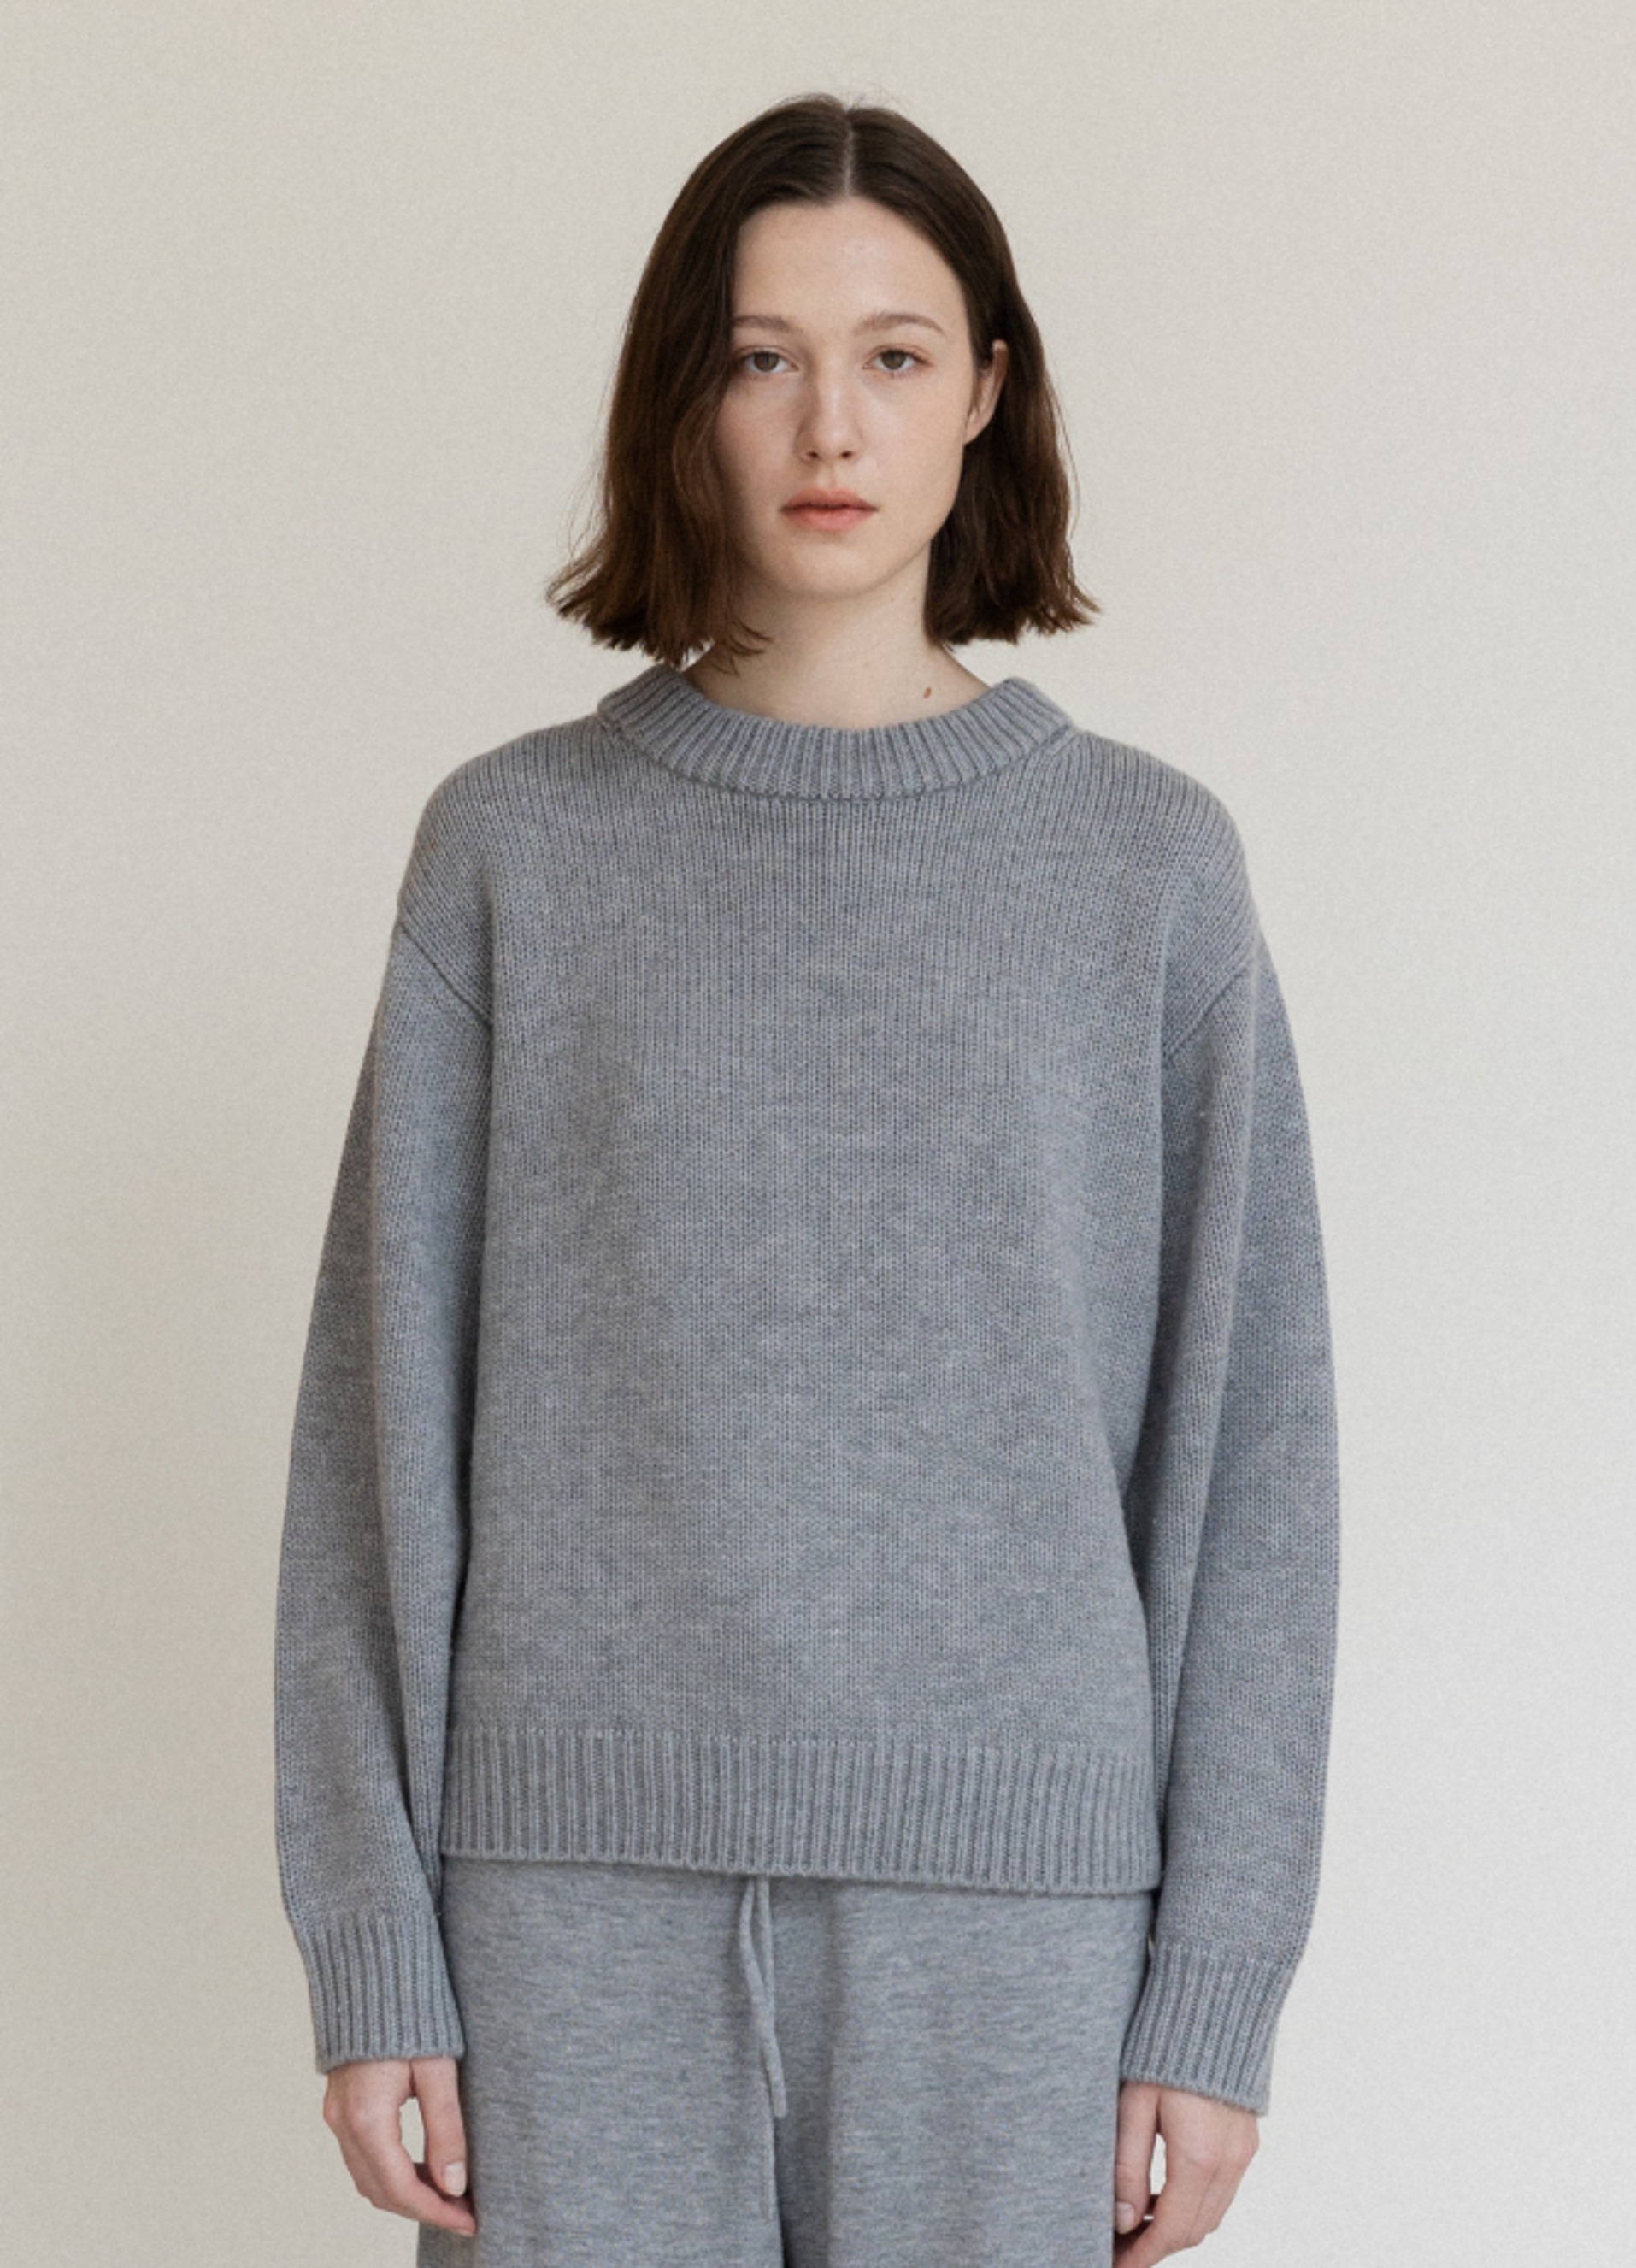 Cozy Sweater (Gray)